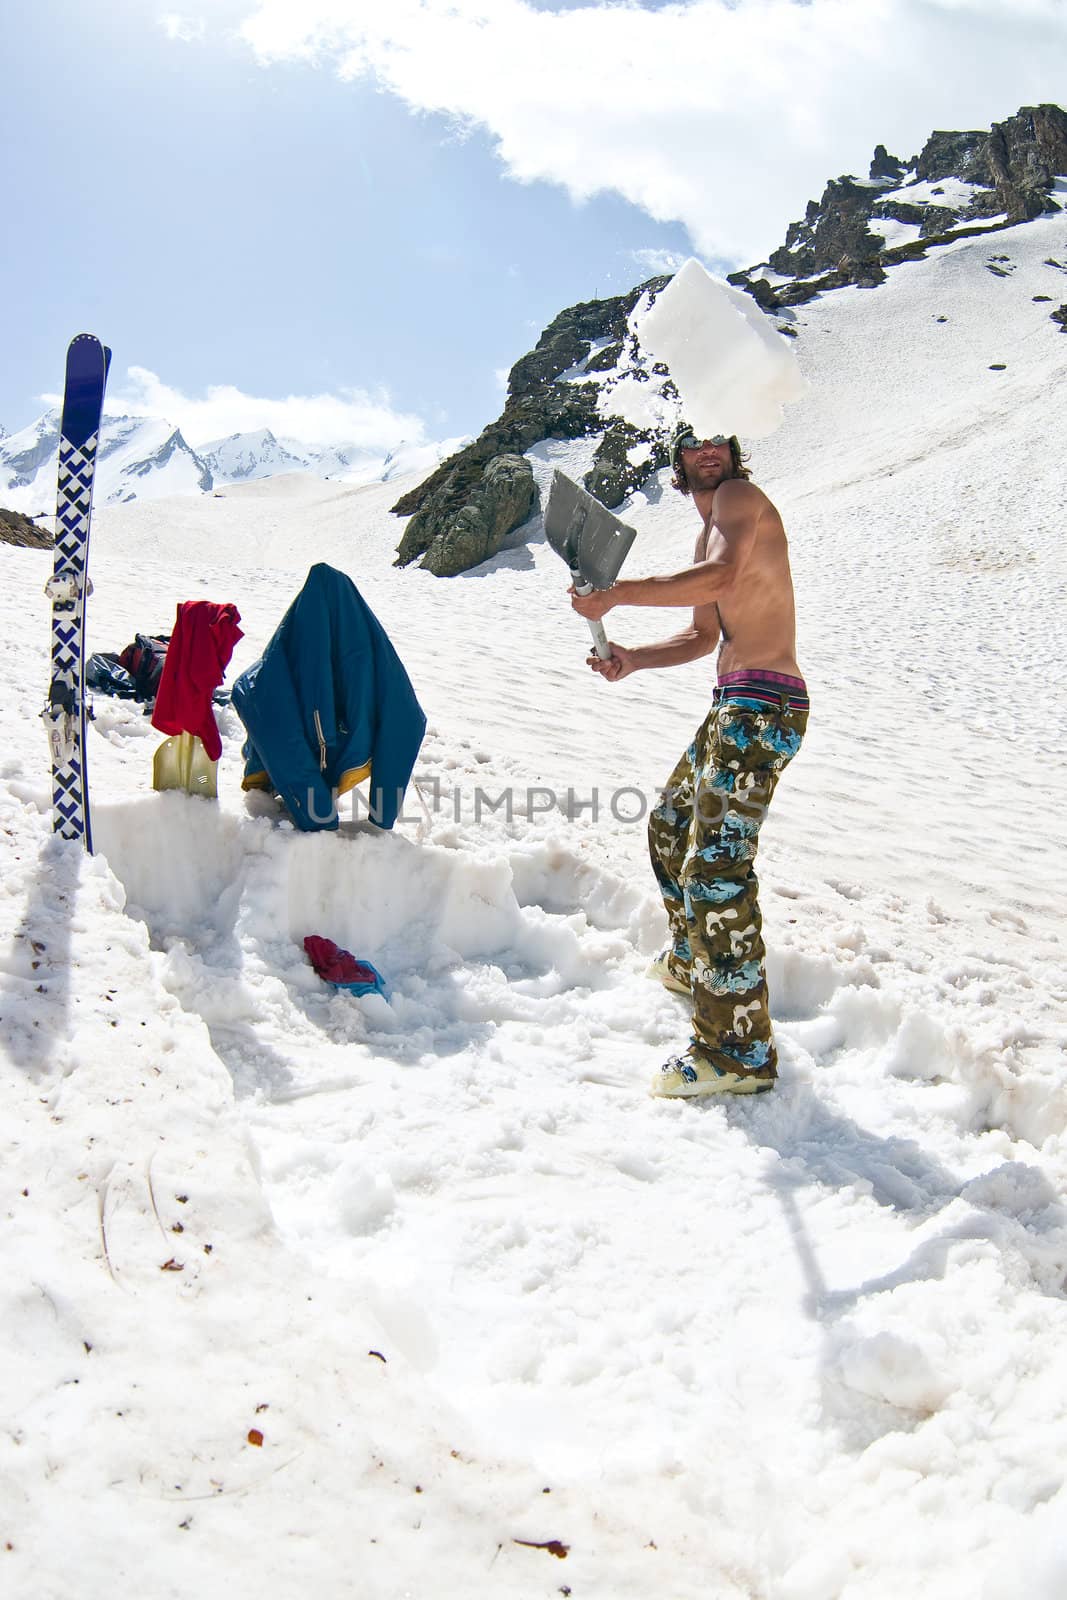 Freerider in Caucasus Mountains, Elbrus, summer 2010